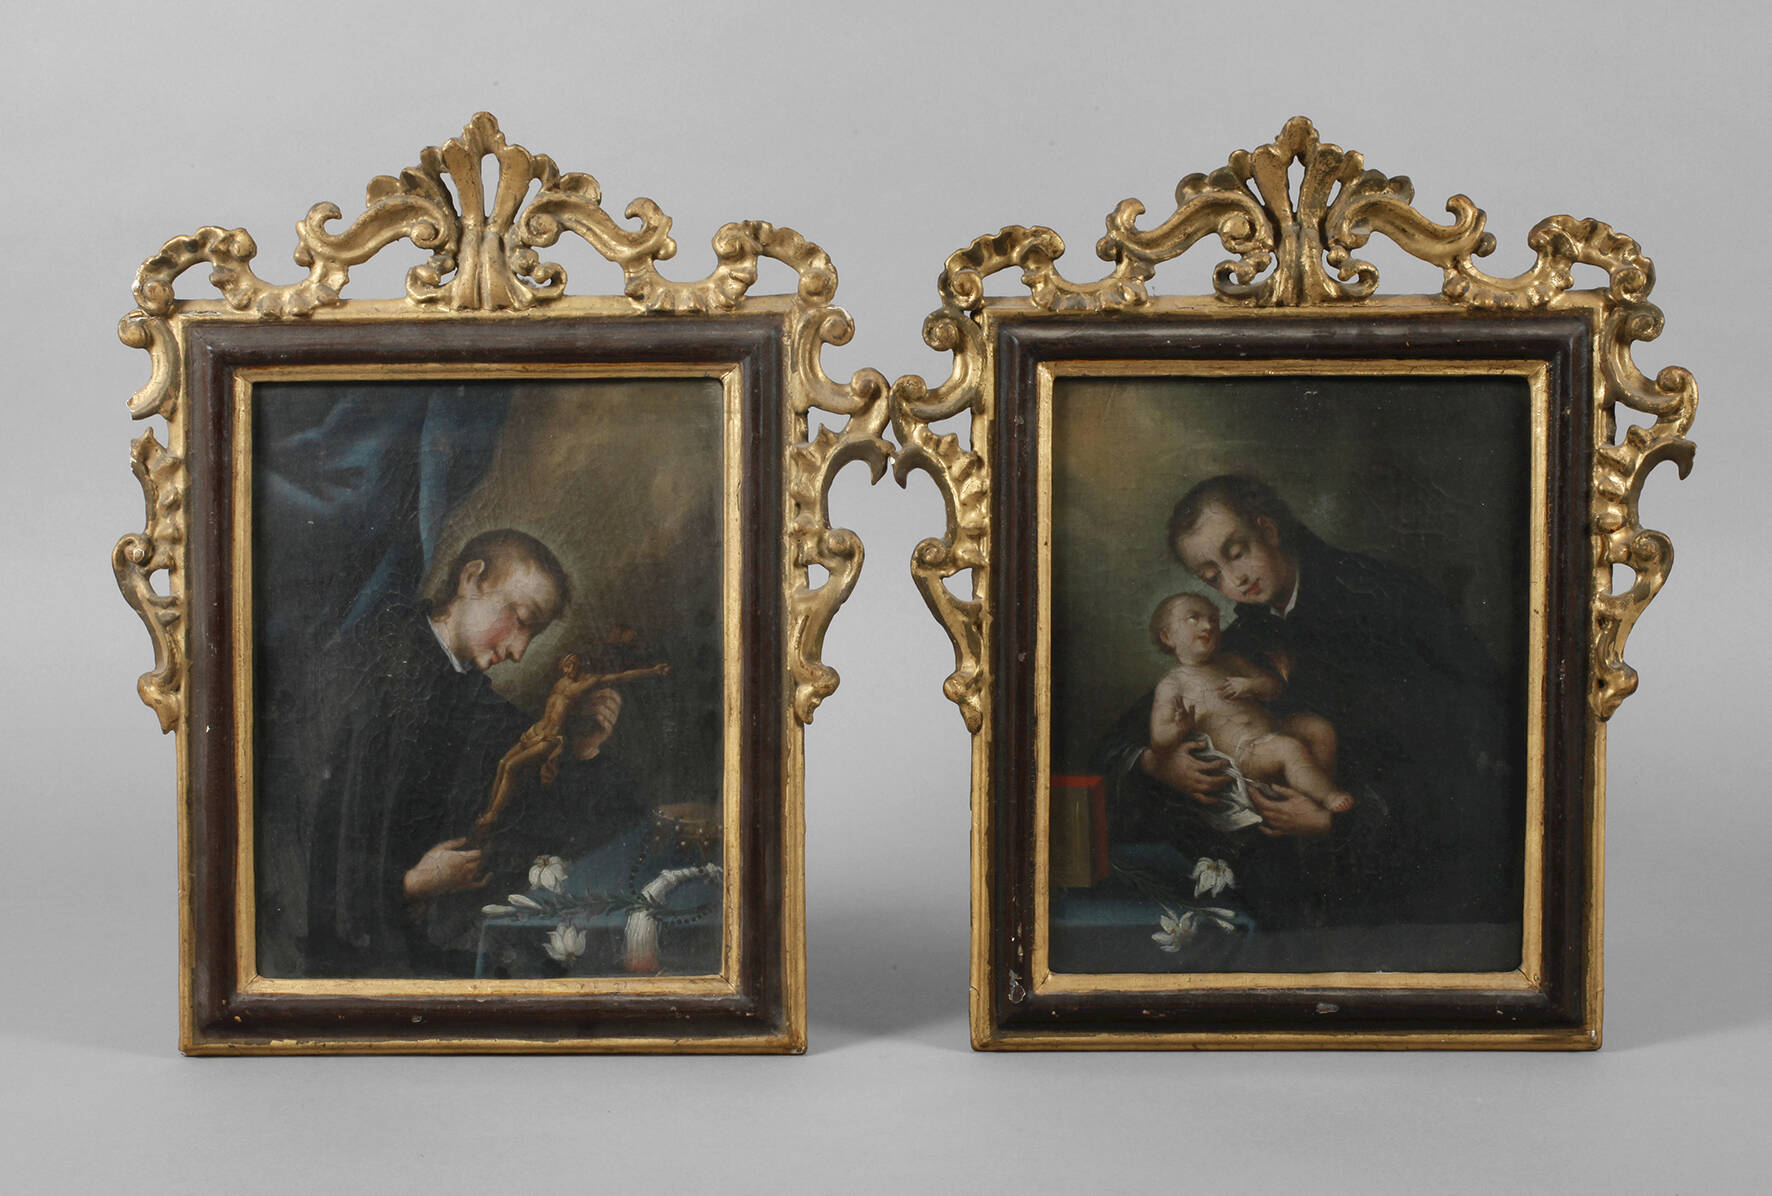 Zwei barocke Andachtsbilder als Gegenstücke